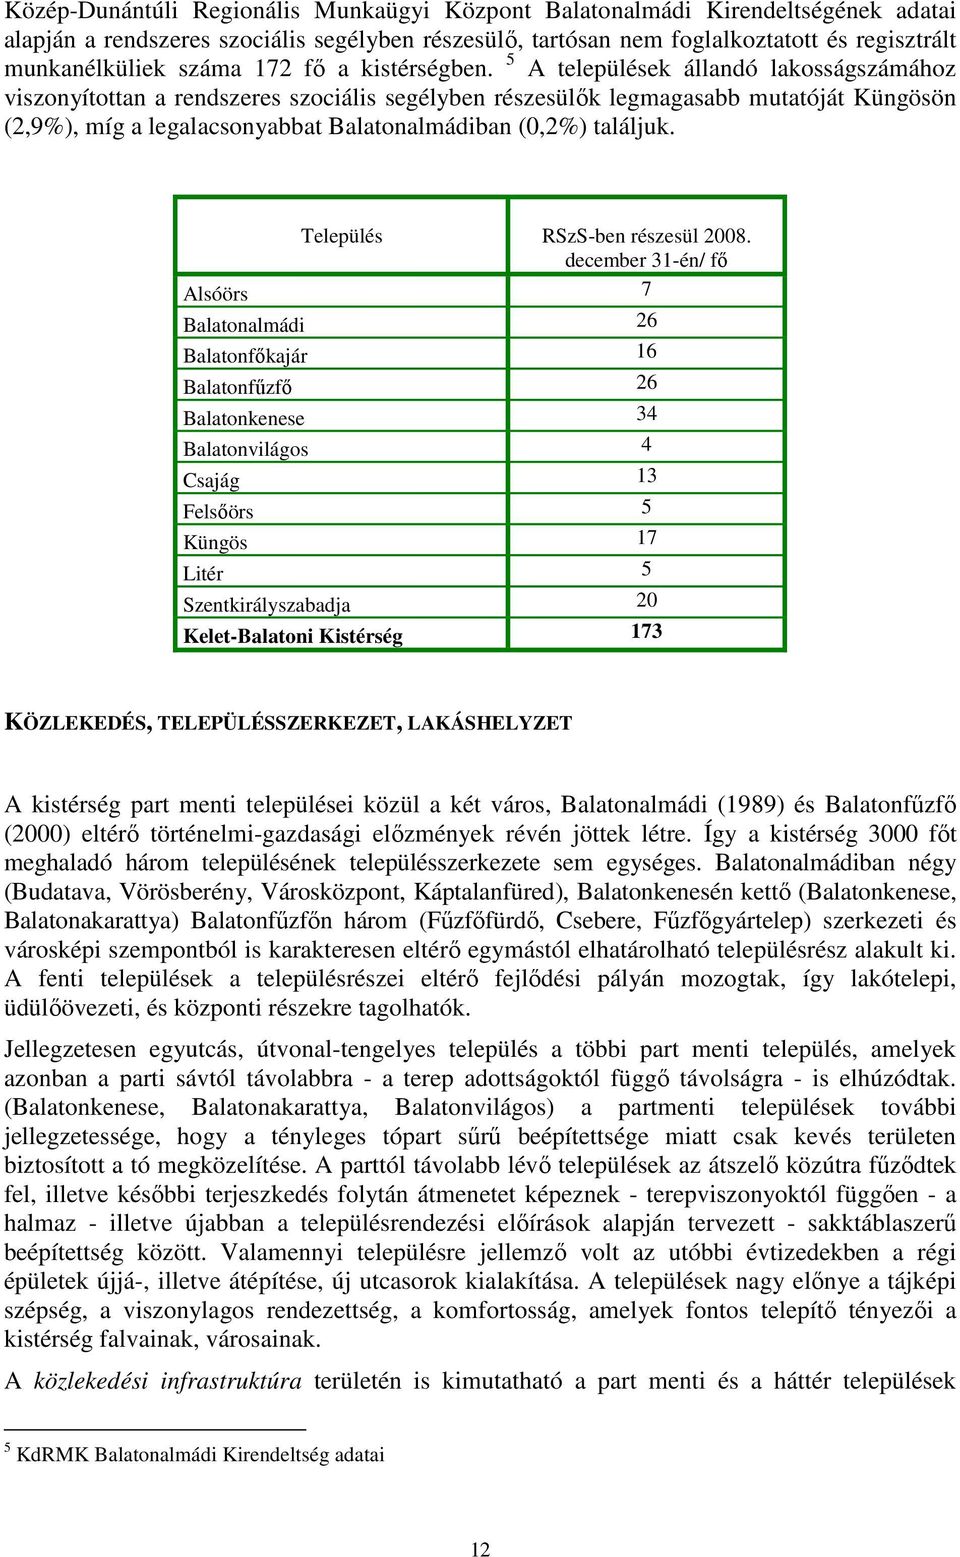 5 A települések állandó lakosságszámához viszonyítottan a rendszeres szociális segélyben részesülık legmagasabb mutatóját Küngösön (2,9%), míg a legalacsonyabbat Balatonalmádiban (0,2%) találjuk.